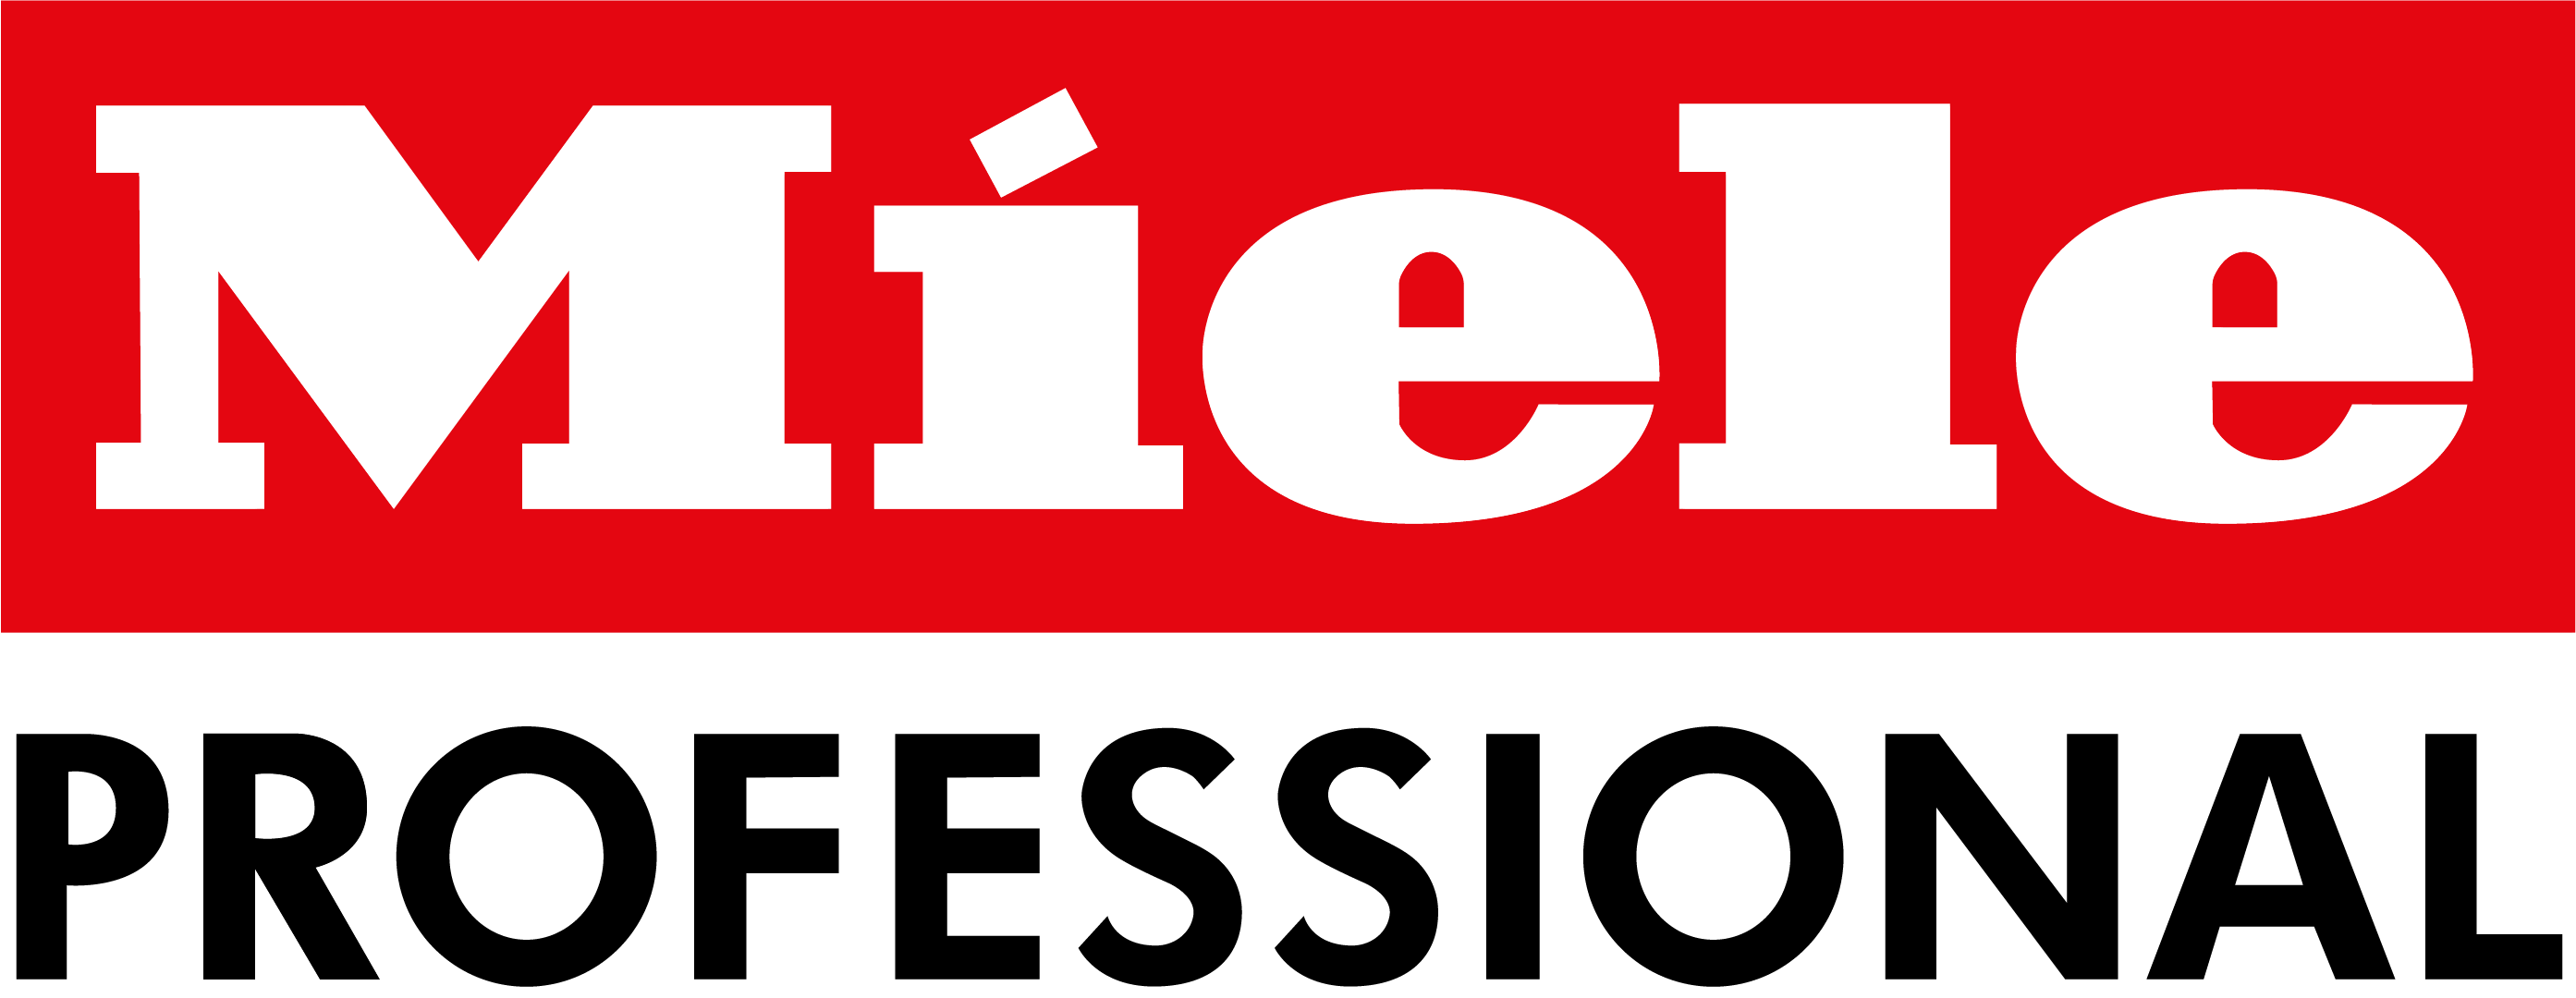 Miele-professional-logo